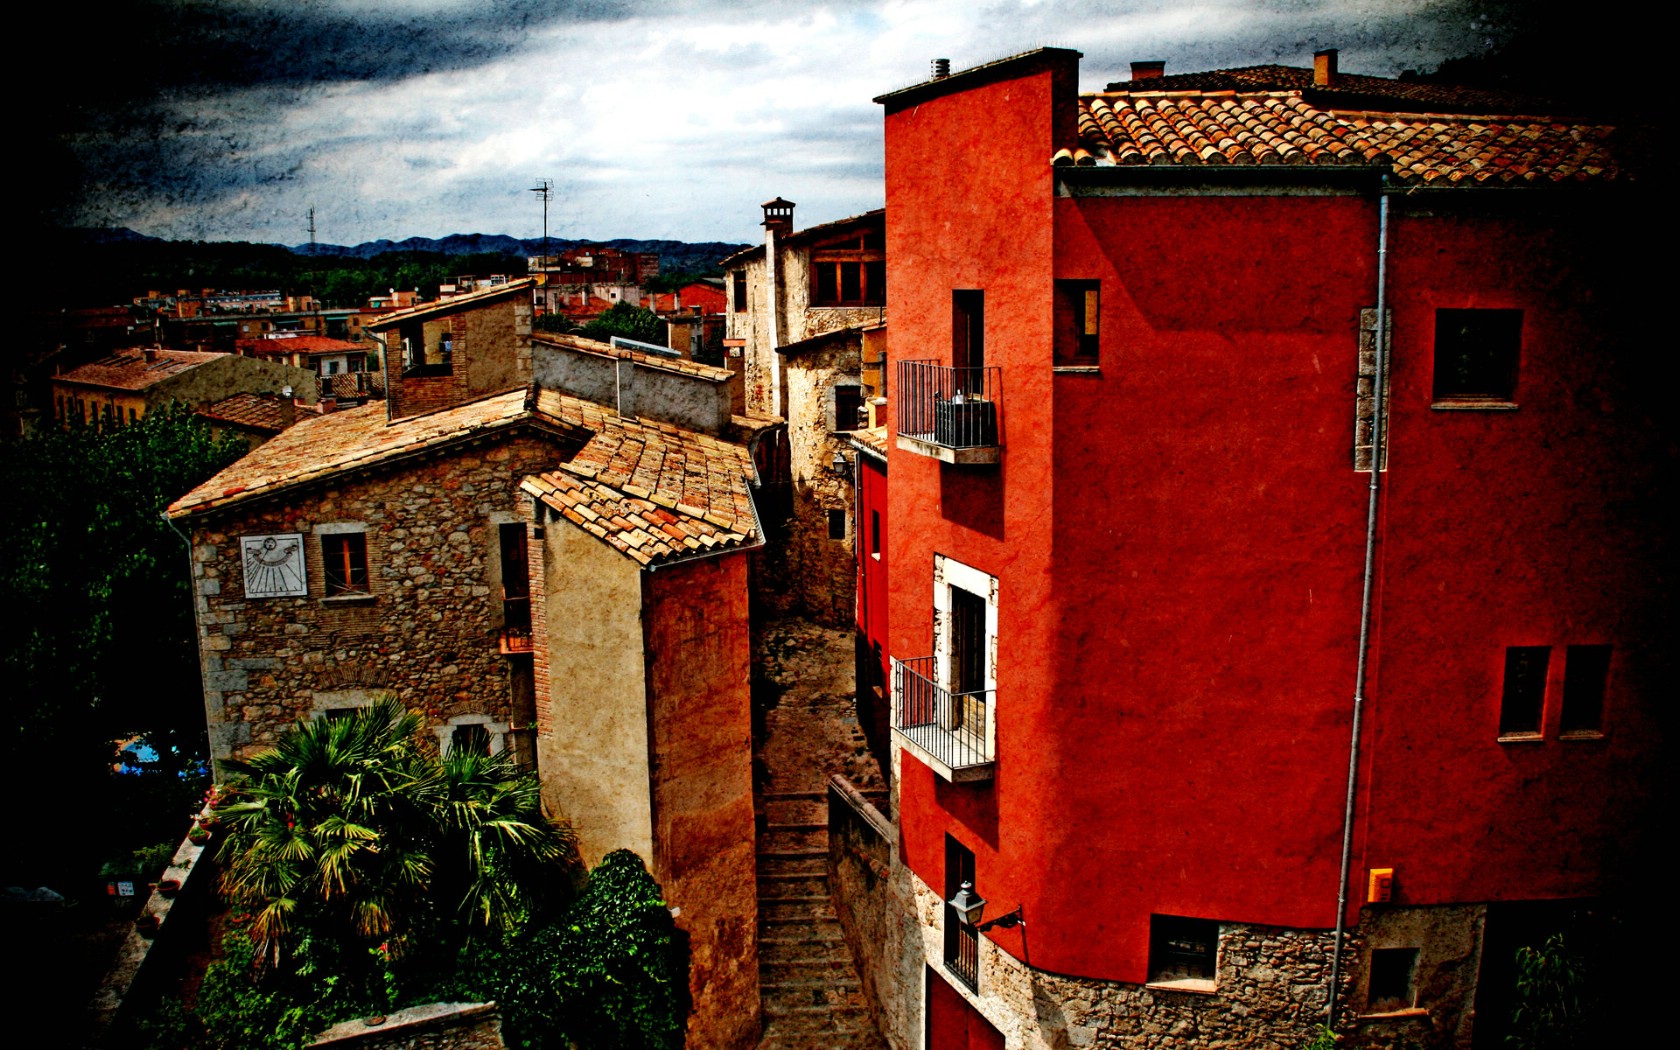 壁纸1680x1050HDR 西班牙城市映像 赫罗纳的红房子 西班牙 Girona 赫罗纳城市风景壁纸 HDR 西班牙城市映像壁纸 HDR 西班牙城市映像图片 HDR 西班牙城市映像素材 人文壁纸 人文图库 人文图片素材桌面壁纸